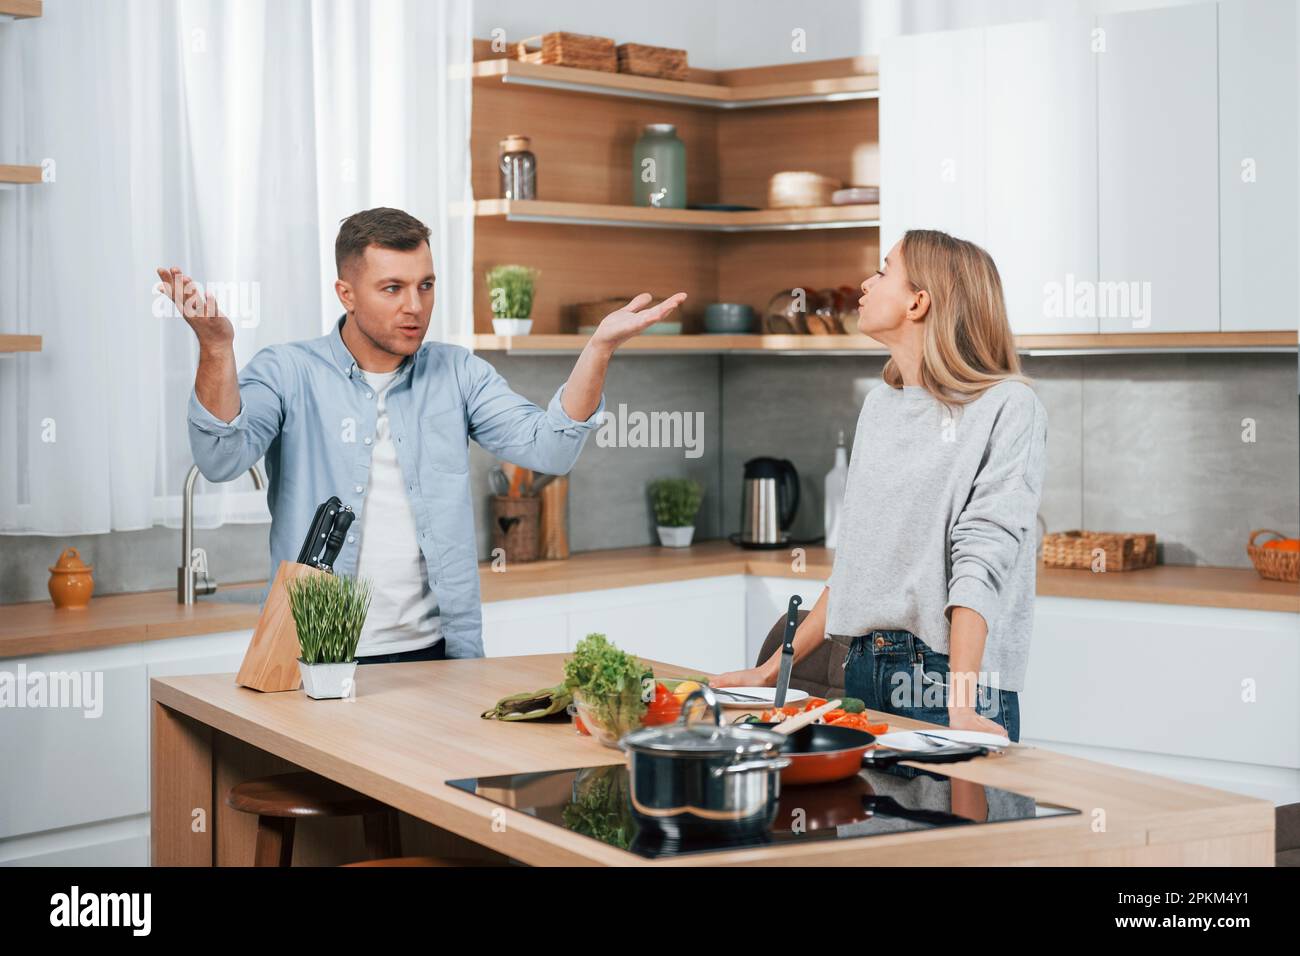 Crier et discuter les uns avec les autres. Couple préparant la nourriture à la maison sur la cuisine moderne. Banque D'Images